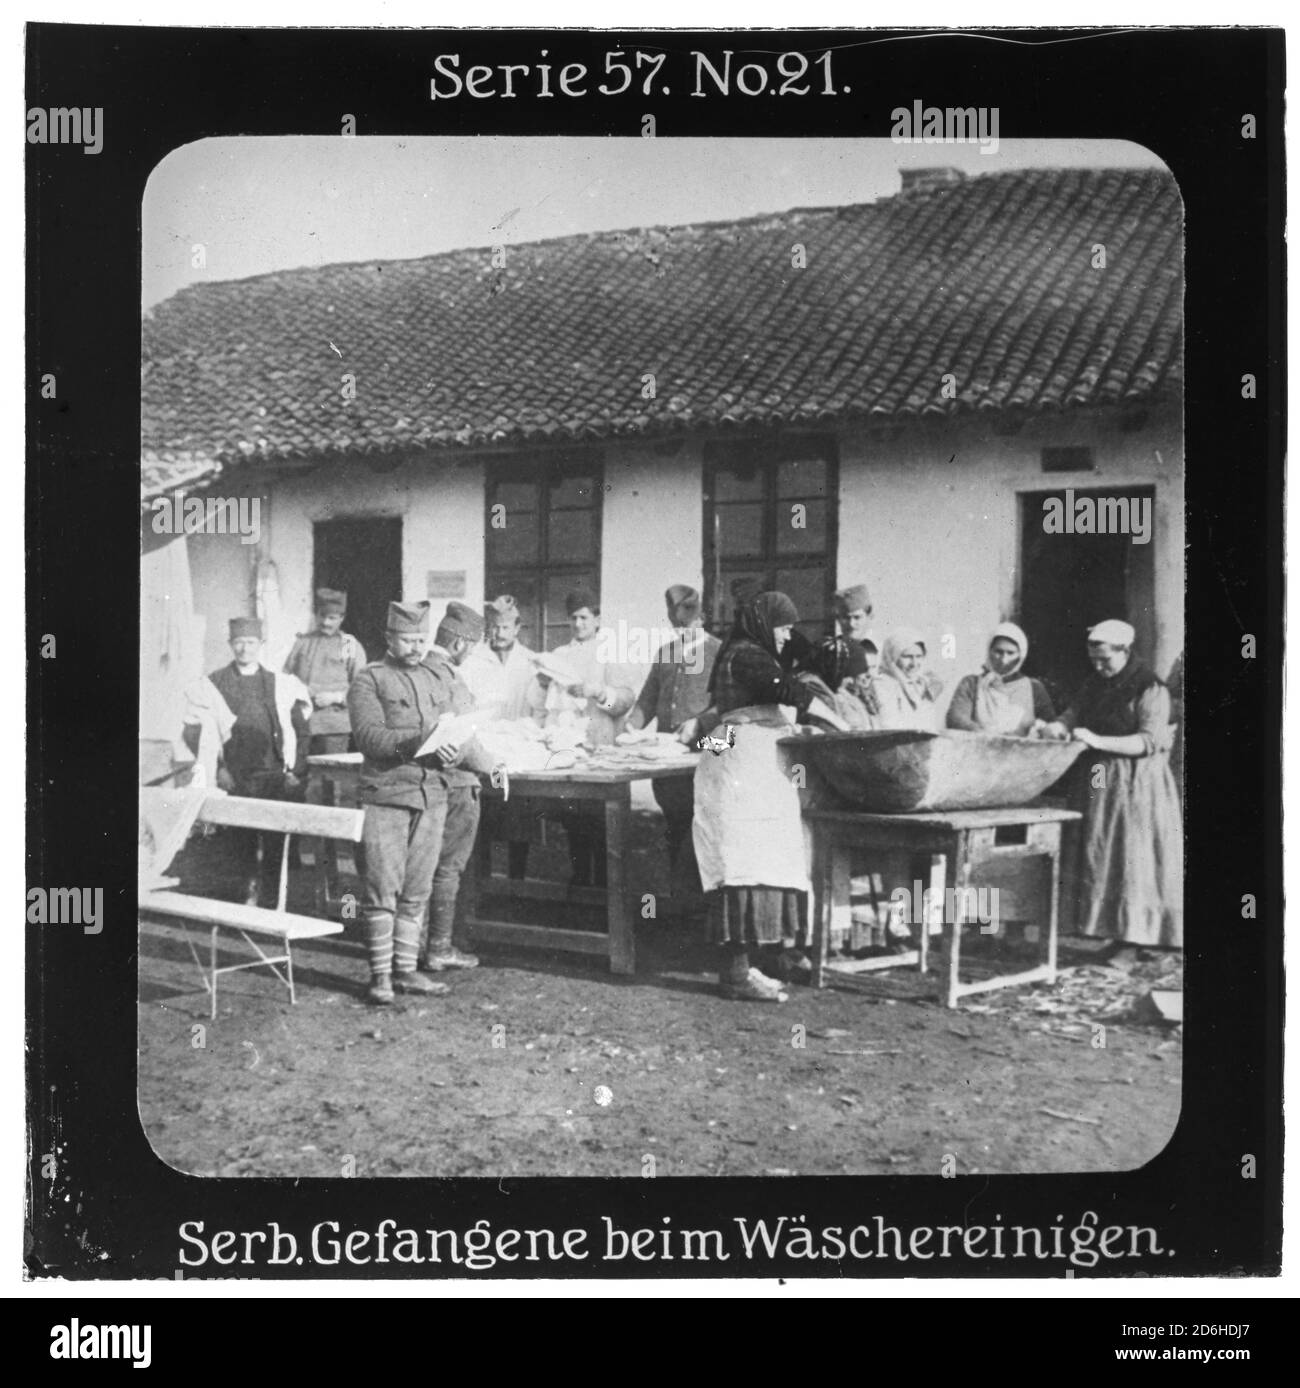 Projection für Alle - Die Eroberung Serbiens. Serie 57. No 21. Serbische Gefangene beim Wäschereinigen. Nach dem Scheitern des Serbienfeldzugs der k.u.k. Armee im Jahr 1914 wurde im Oktober 1915 mit massiver deutscher Unterstützung ein neuer Feldzug durchgeführt. Die Firma „Projection für Alle“ wurde 1905 von Max Skladanowsky (1861-1939) gegründet. Sie produzierte bis 1928 fast 100 Serien zu je 24 Glasdias im Format 8,3 x 8,3 cm im sog. Bromsilber-Gelatine-Trockenplatten Verfahren. Die Serien umfassten Städte, Länder, Landschaften, Märchen und Sagen, das Alte Testament u. den 1. Weltkrieg. Stock Photo